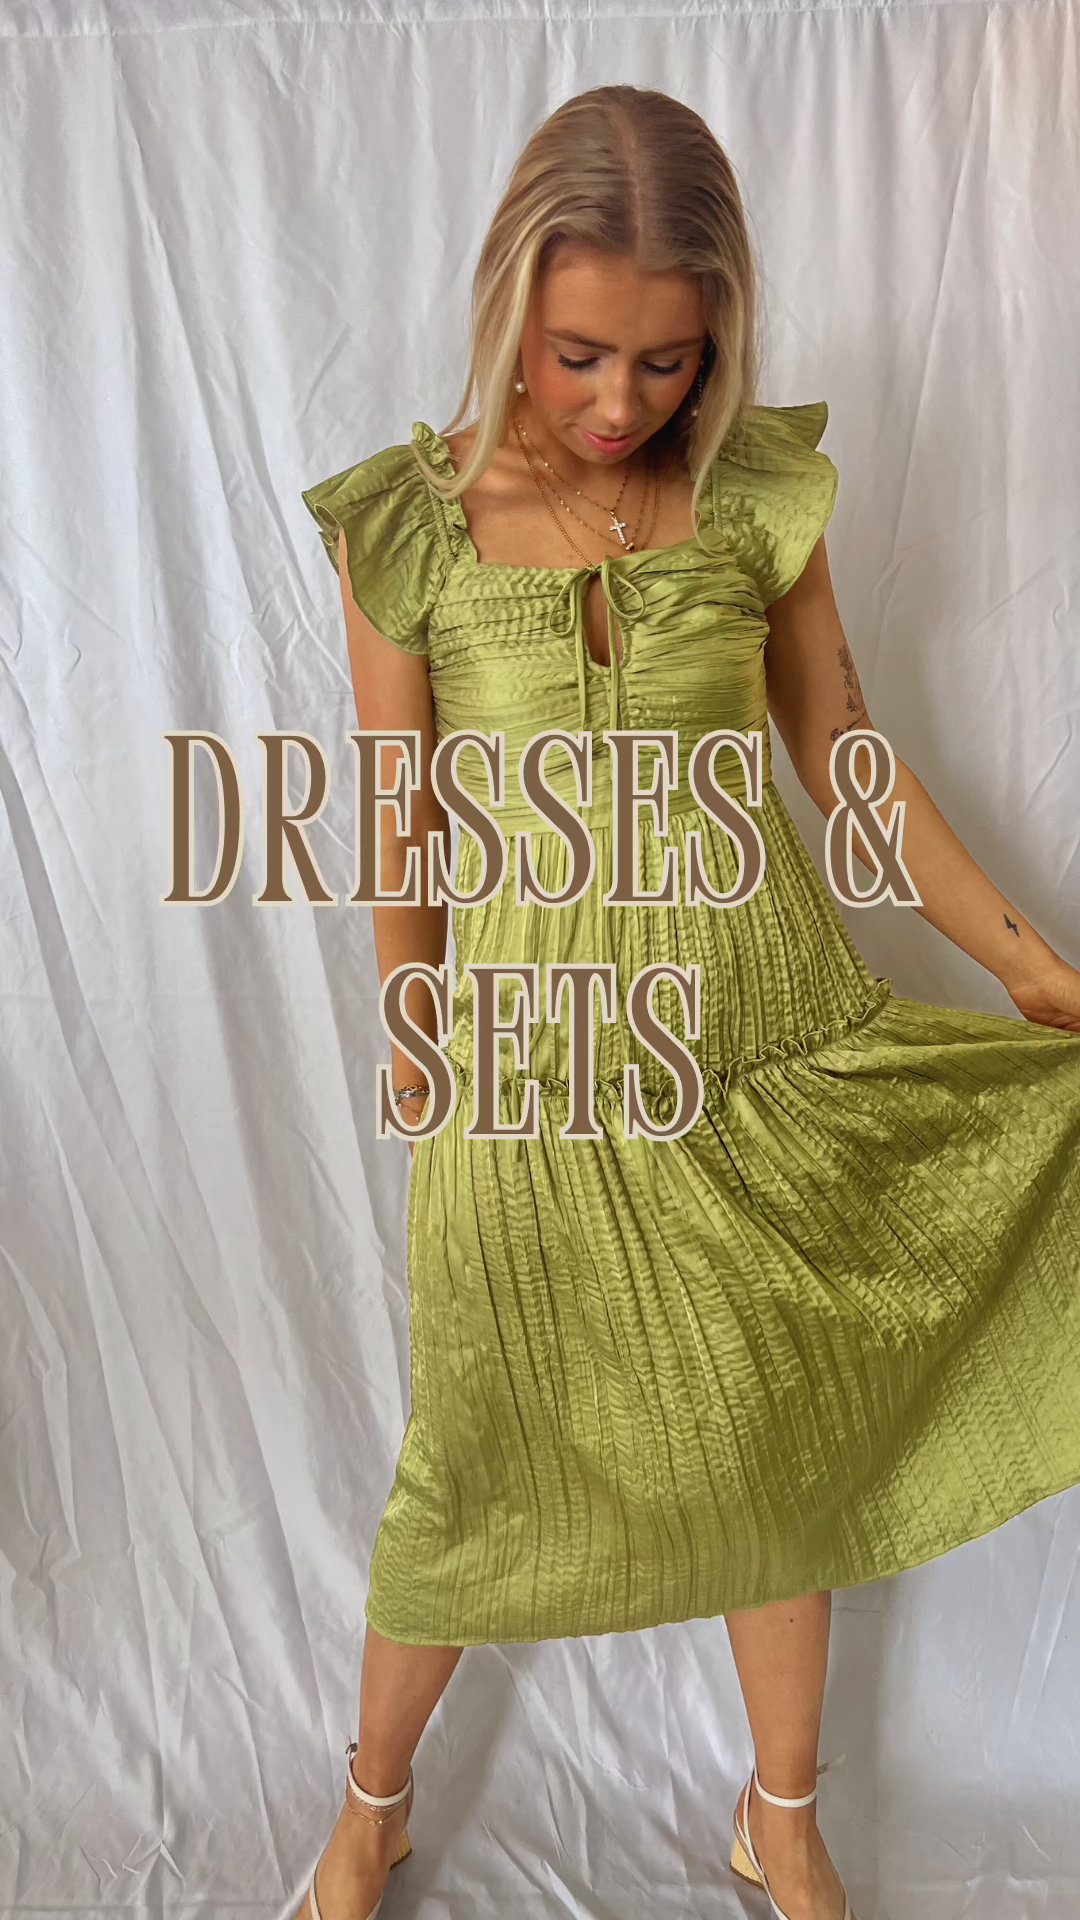 DRESSES + SETS